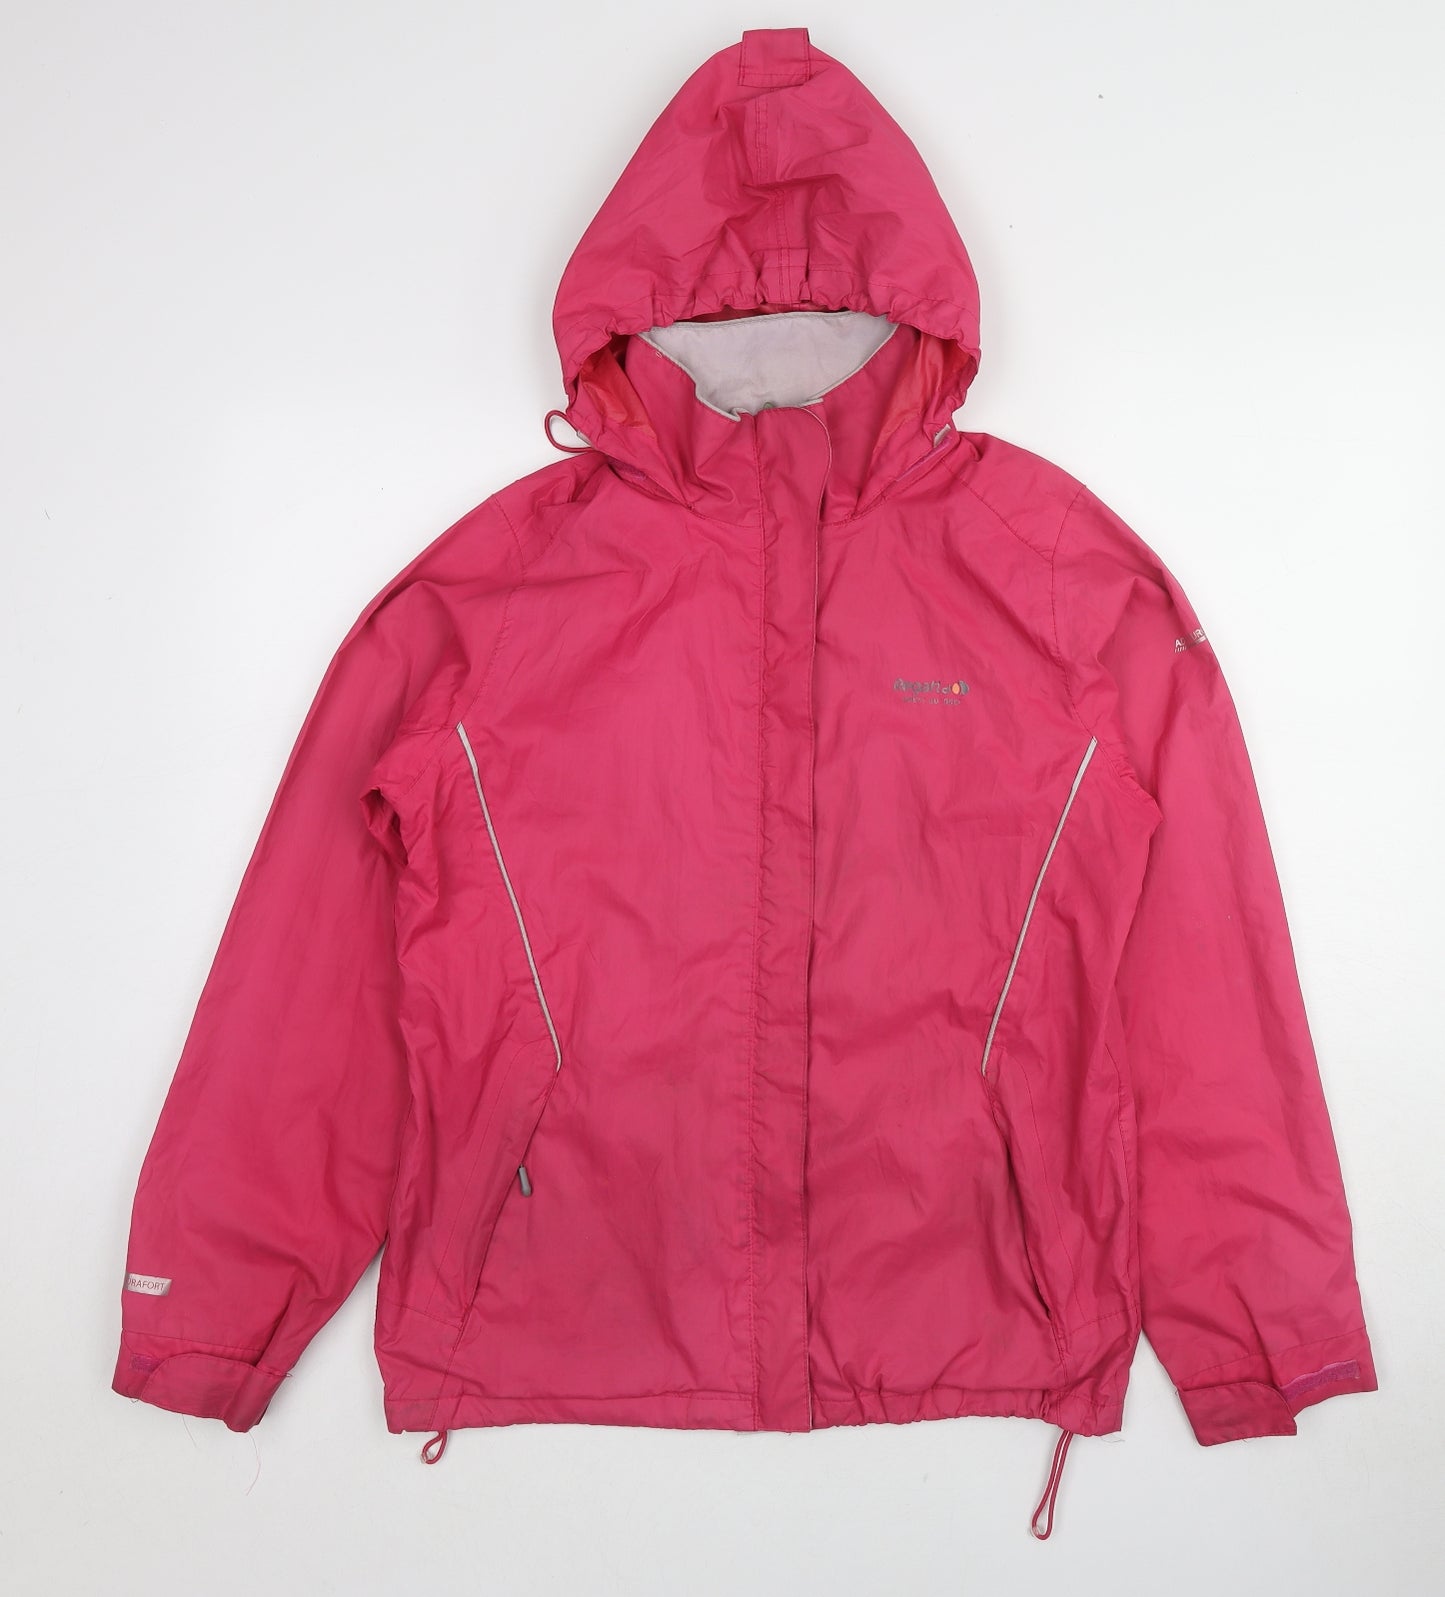 Regatta Womens Pink Windbreaker Jacket Size 12 Zip